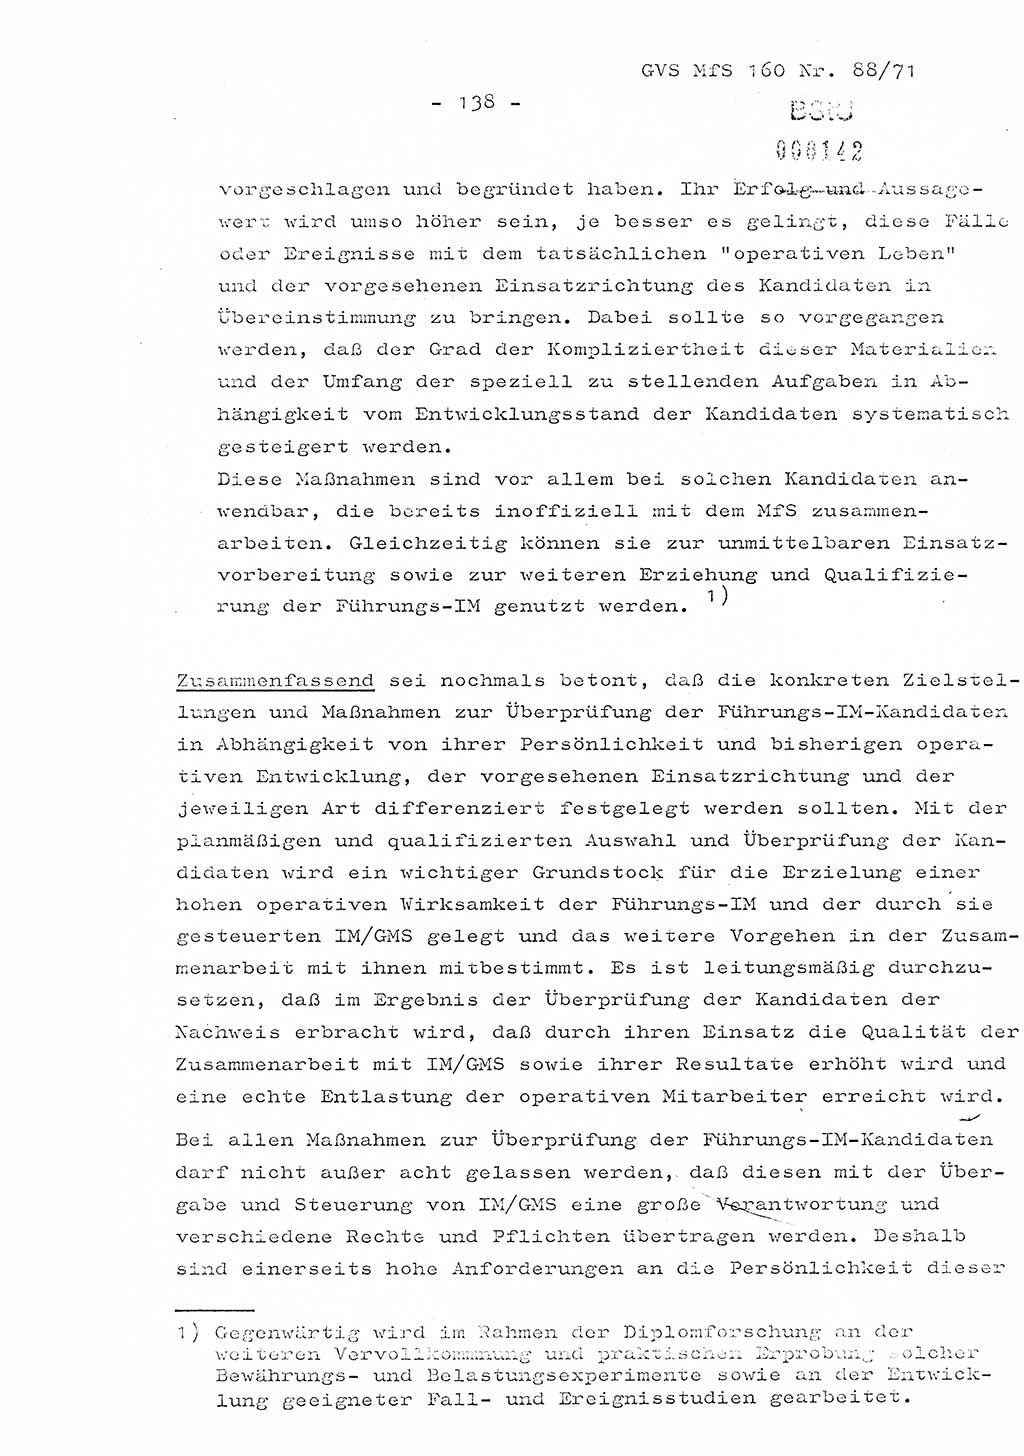 Dissertation Oberstleutnant Josef Schwarz (BV Schwerin), Major Fritz Amm (JHS), Hauptmann Peter Gräßler (JHS), Ministerium für Staatssicherheit (MfS) [Deutsche Demokratische Republik (DDR)], Juristische Hochschule (JHS), Geheime Verschlußsache (GVS) 160-88/71, Potsdam 1972, Seite 138 (Diss. MfS DDR JHS GVS 160-88/71 1972, S. 138)